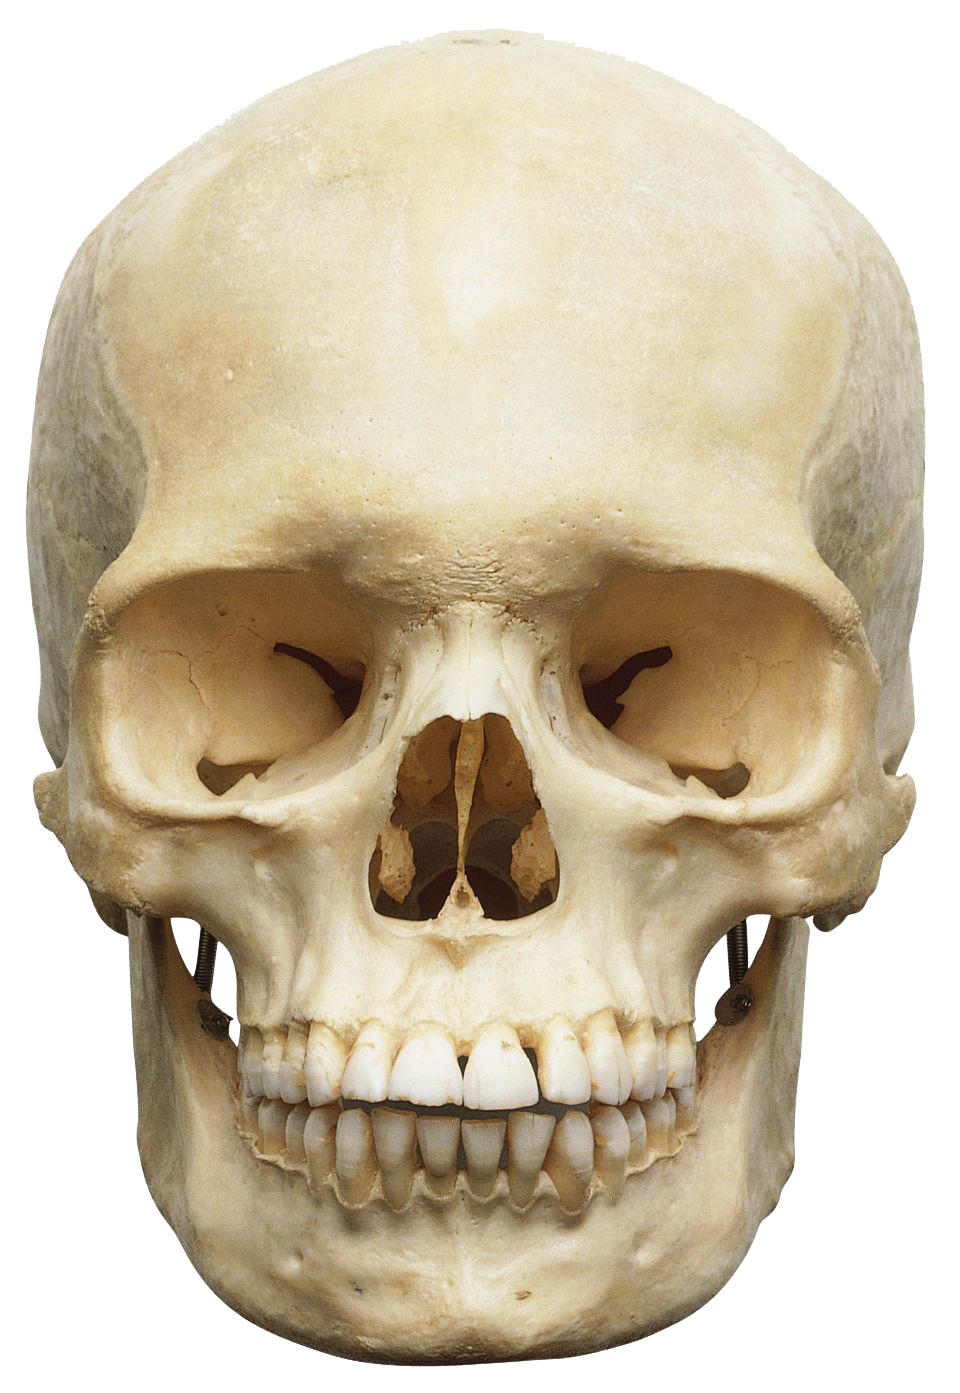 Download Skeleton Head Png Image HQ PNG Image | FreePNGImg